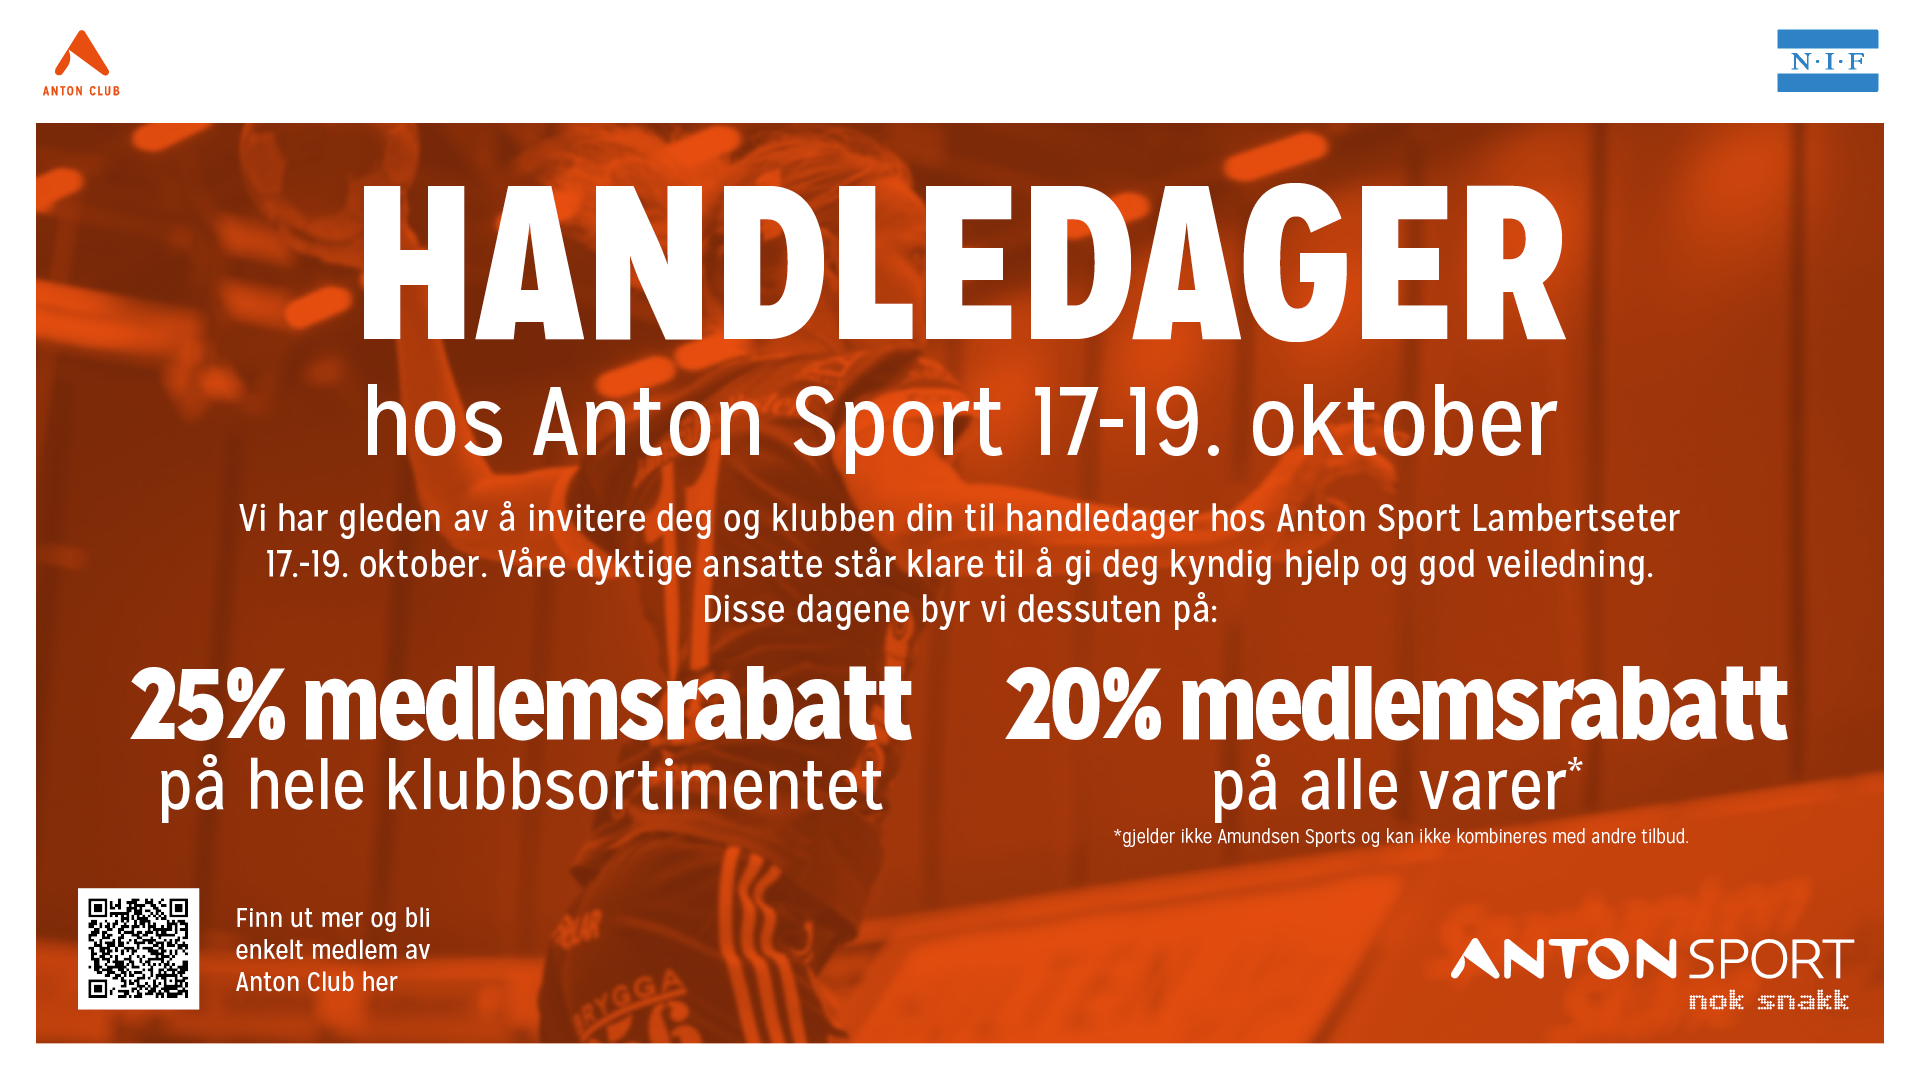 Anton sport inviterer til handledager